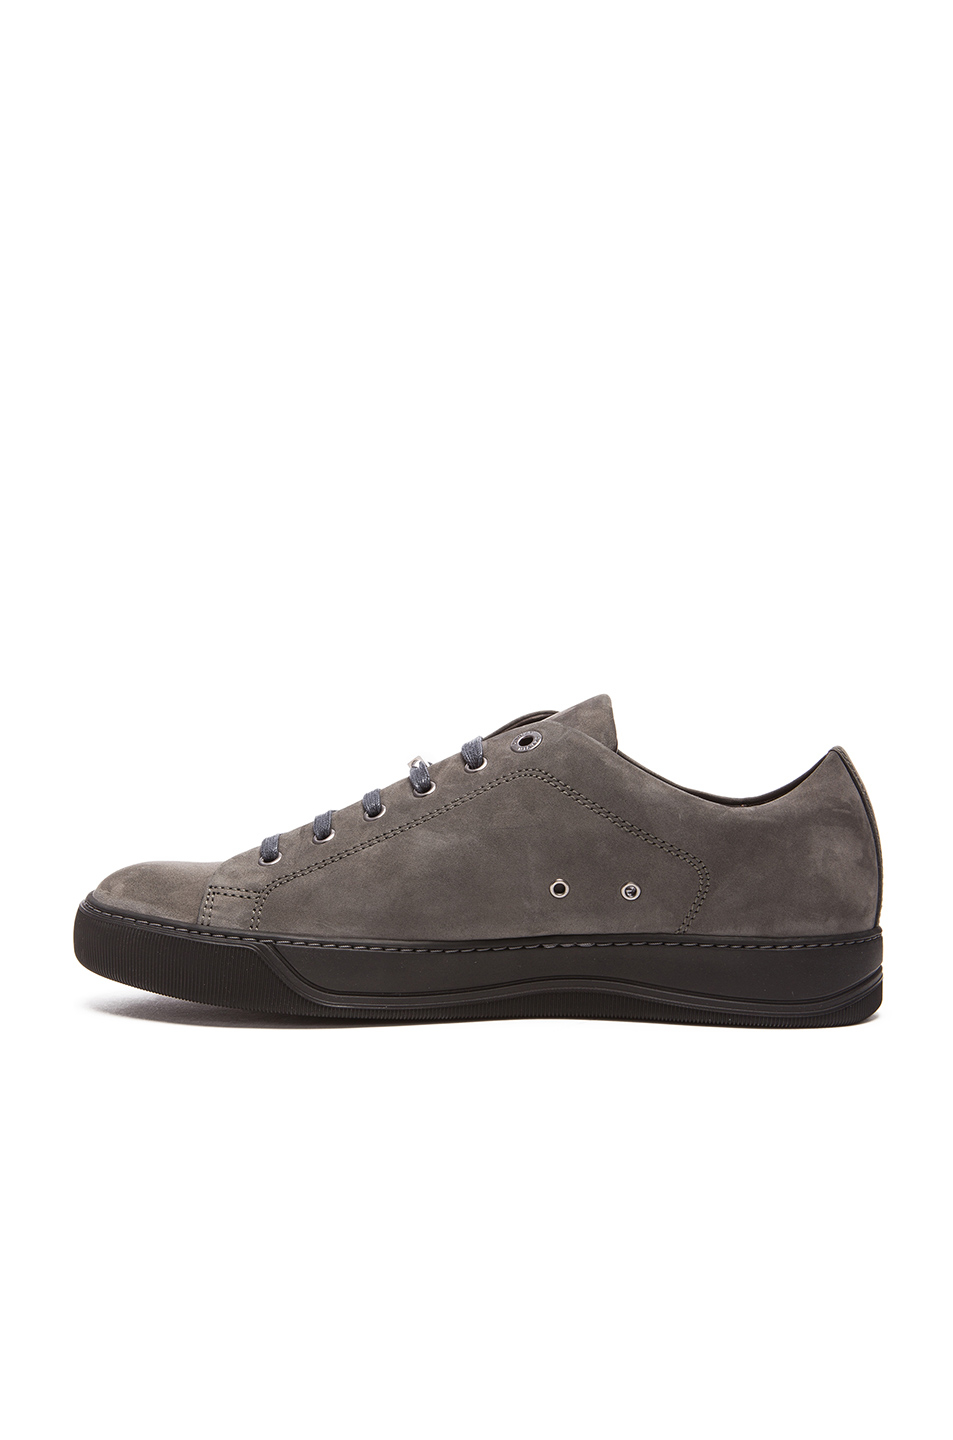 Lyst - Lanvin Nubuck Calfskin Sneakers in Gray